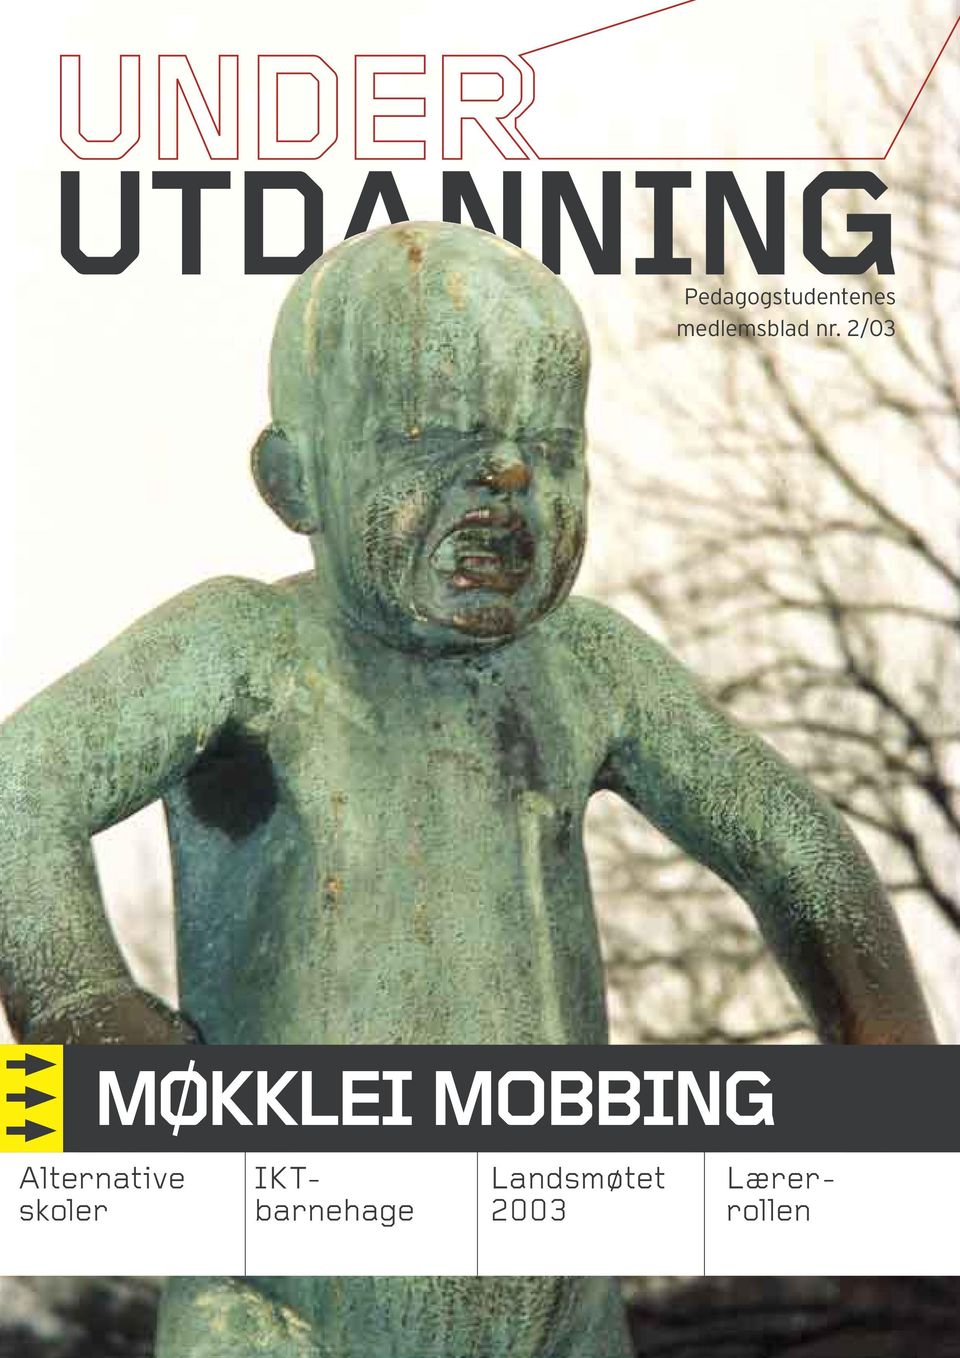 2/03 MØKKLEI MOBBING